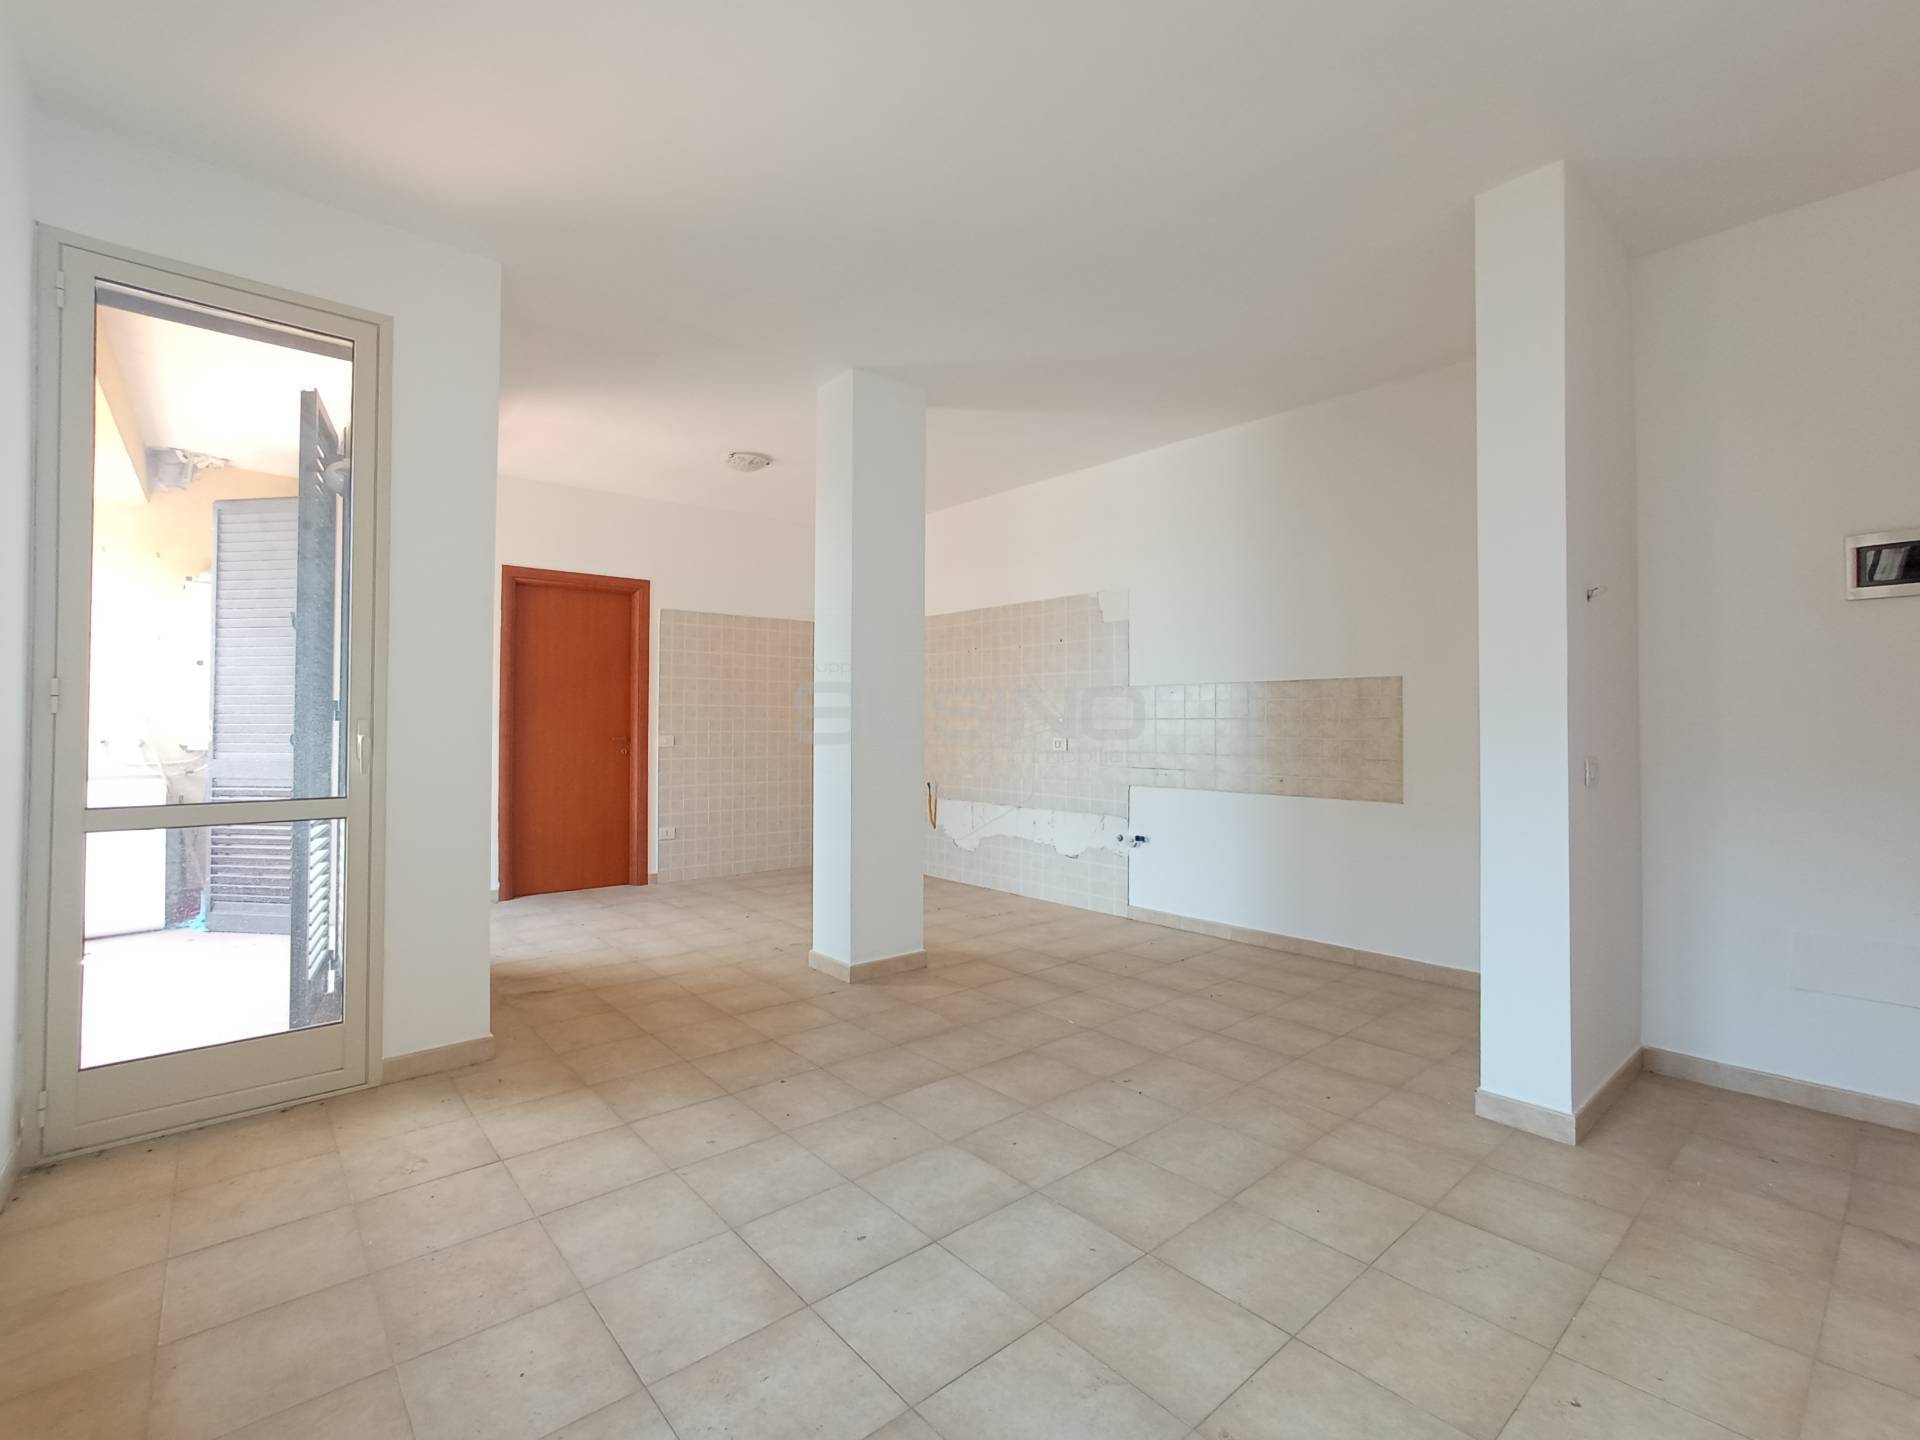 Appartamento in vendita a Floridia, 2 locali, zona Località: Villa, prezzo € 53.000 | PortaleAgenzieImmobiliari.it